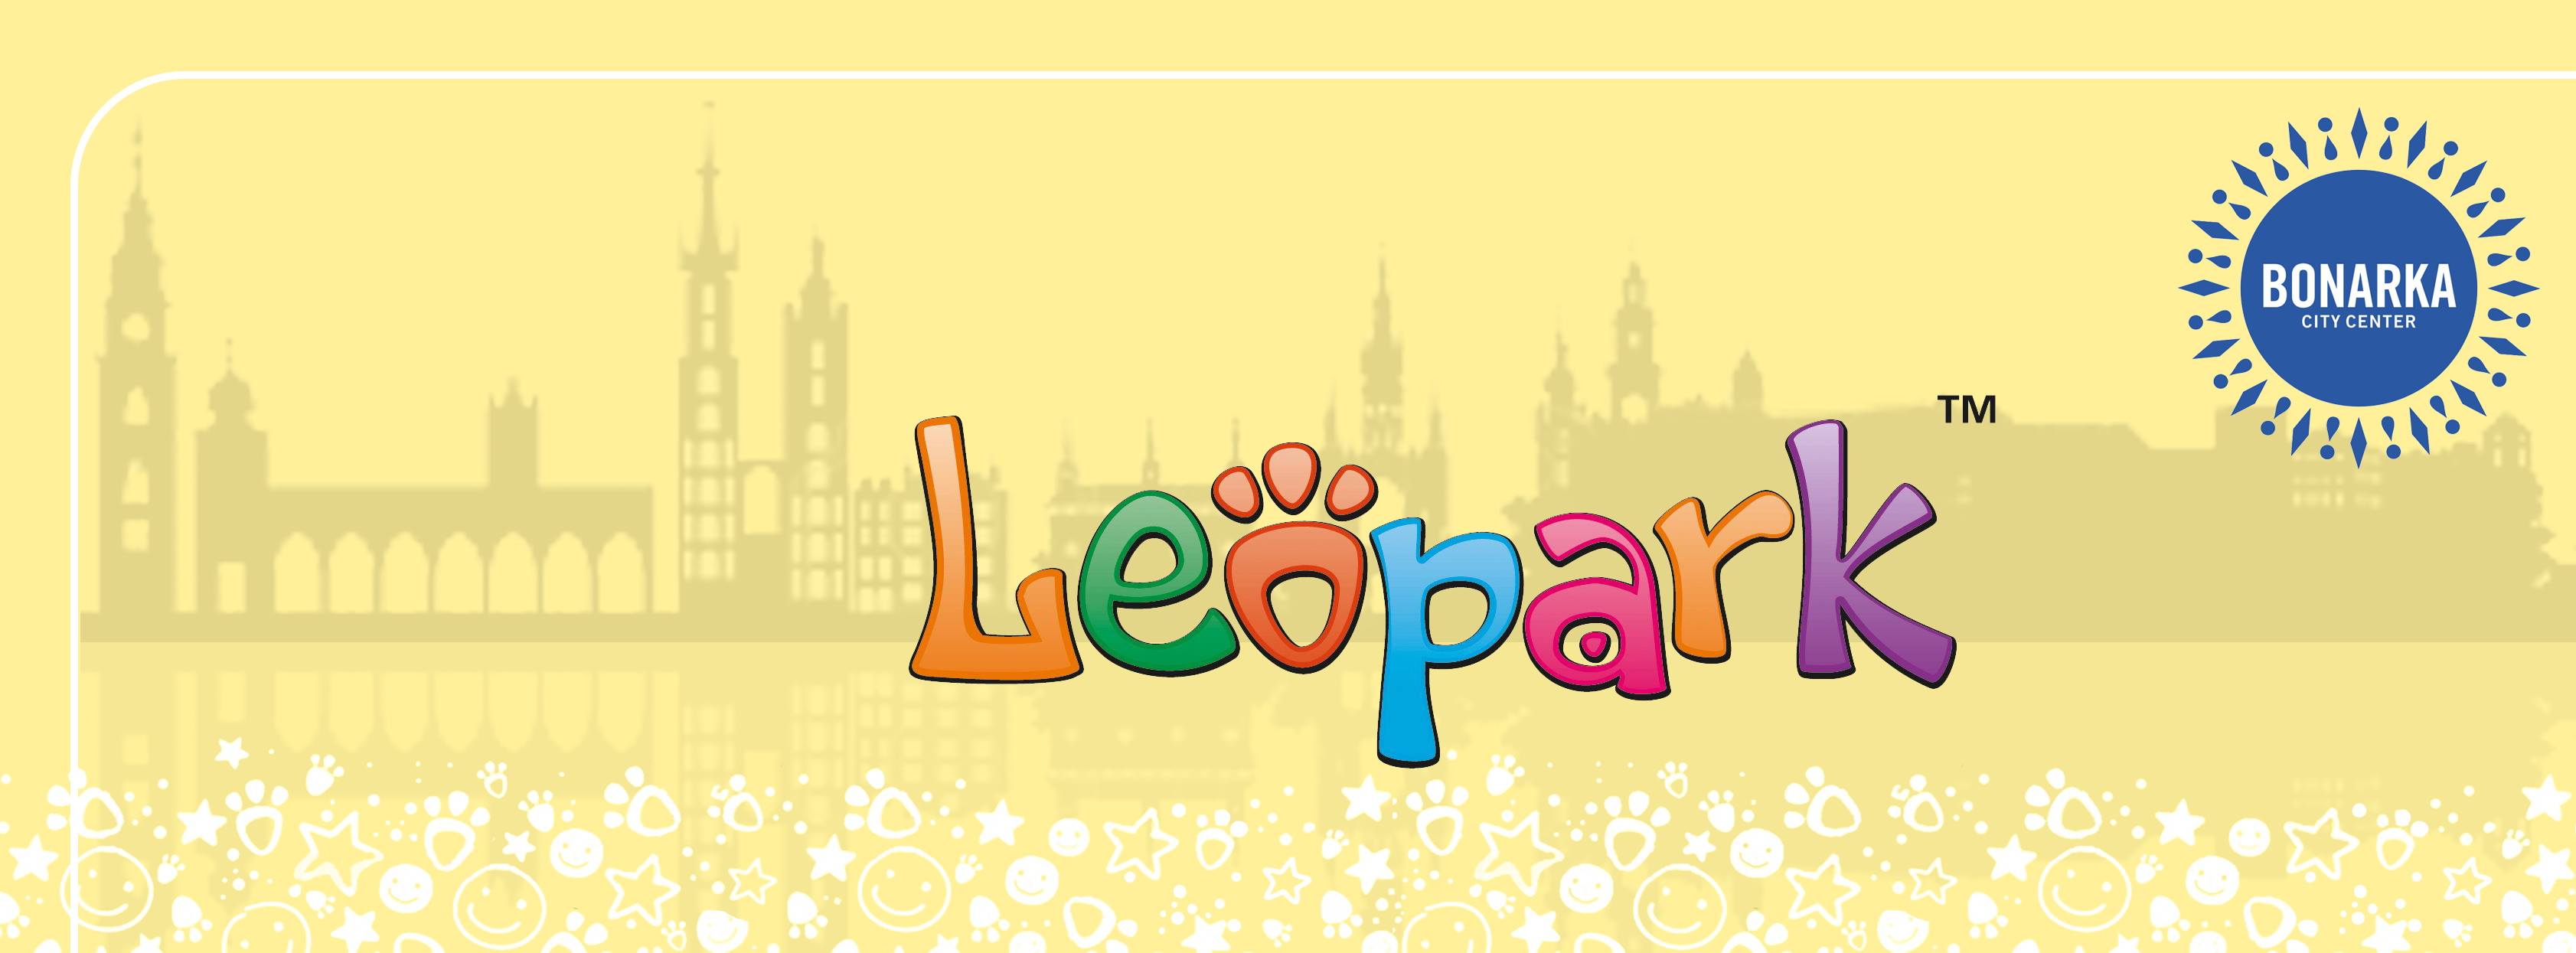 Leopark. Centrum zabaw dla dzieci